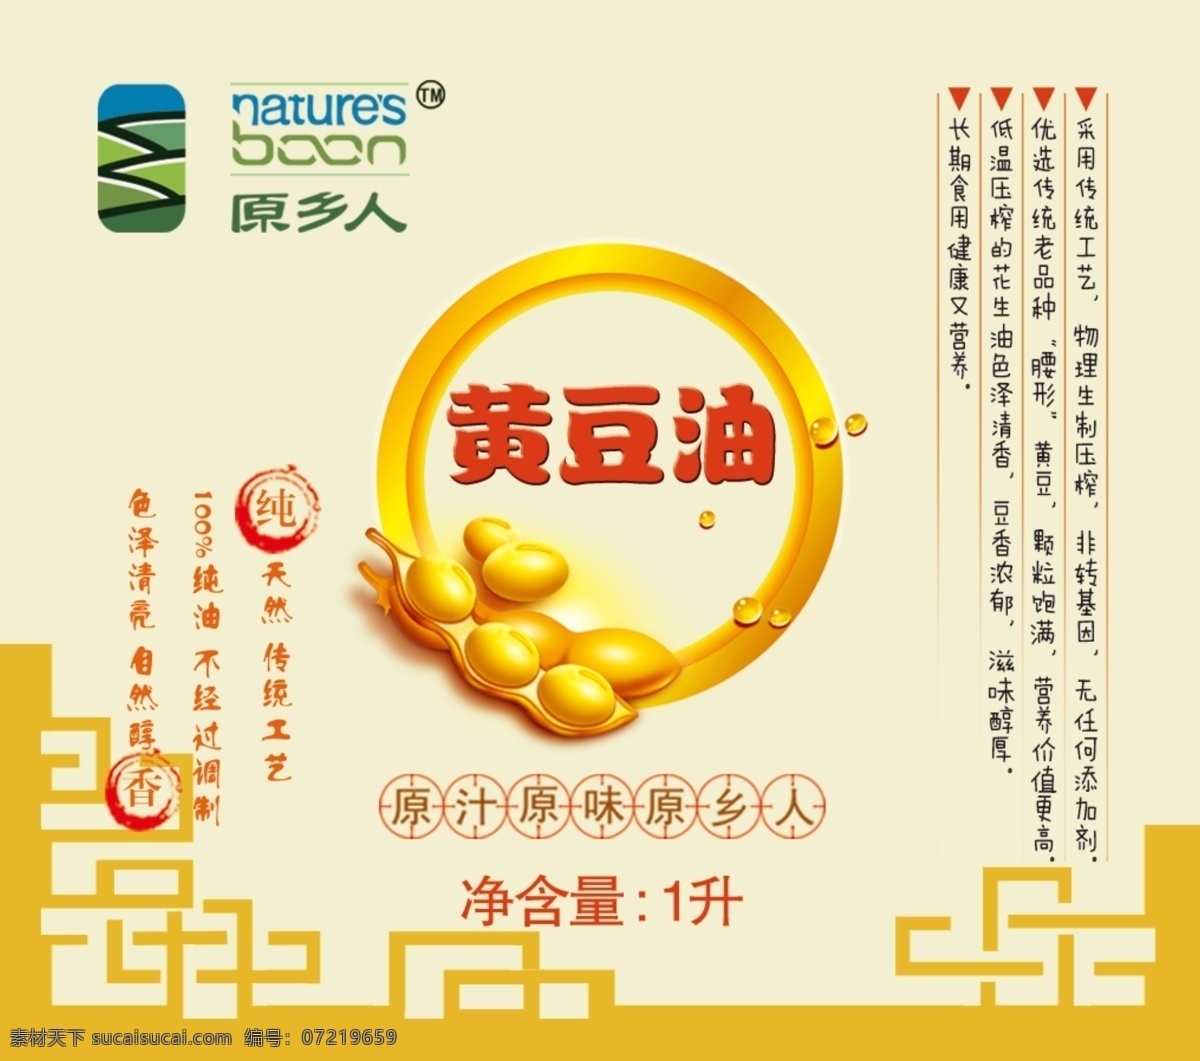 黄豆 油 包装 标贴 黄豆油 食用油 原生态 传统工艺 物理压榨 包装设计